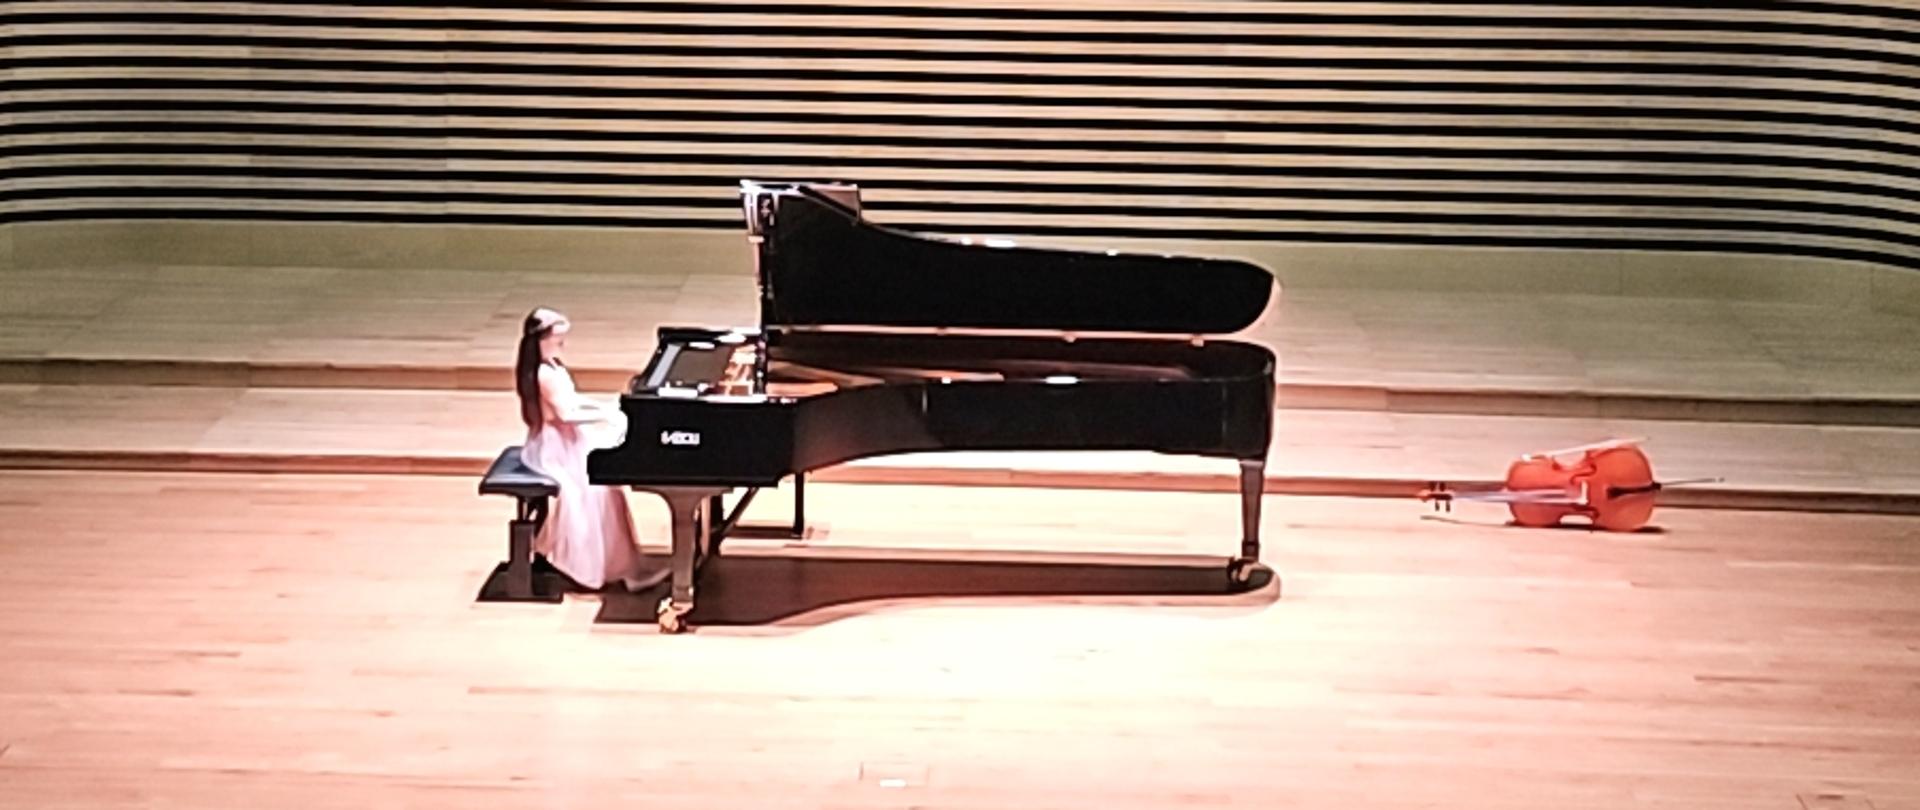 Dziewczynka w długiej jasnoróżowej sukience gra na fortepianie na estradzie sali koncertowej. Z przodu widać od tyłu fragment widowni z publicznością.